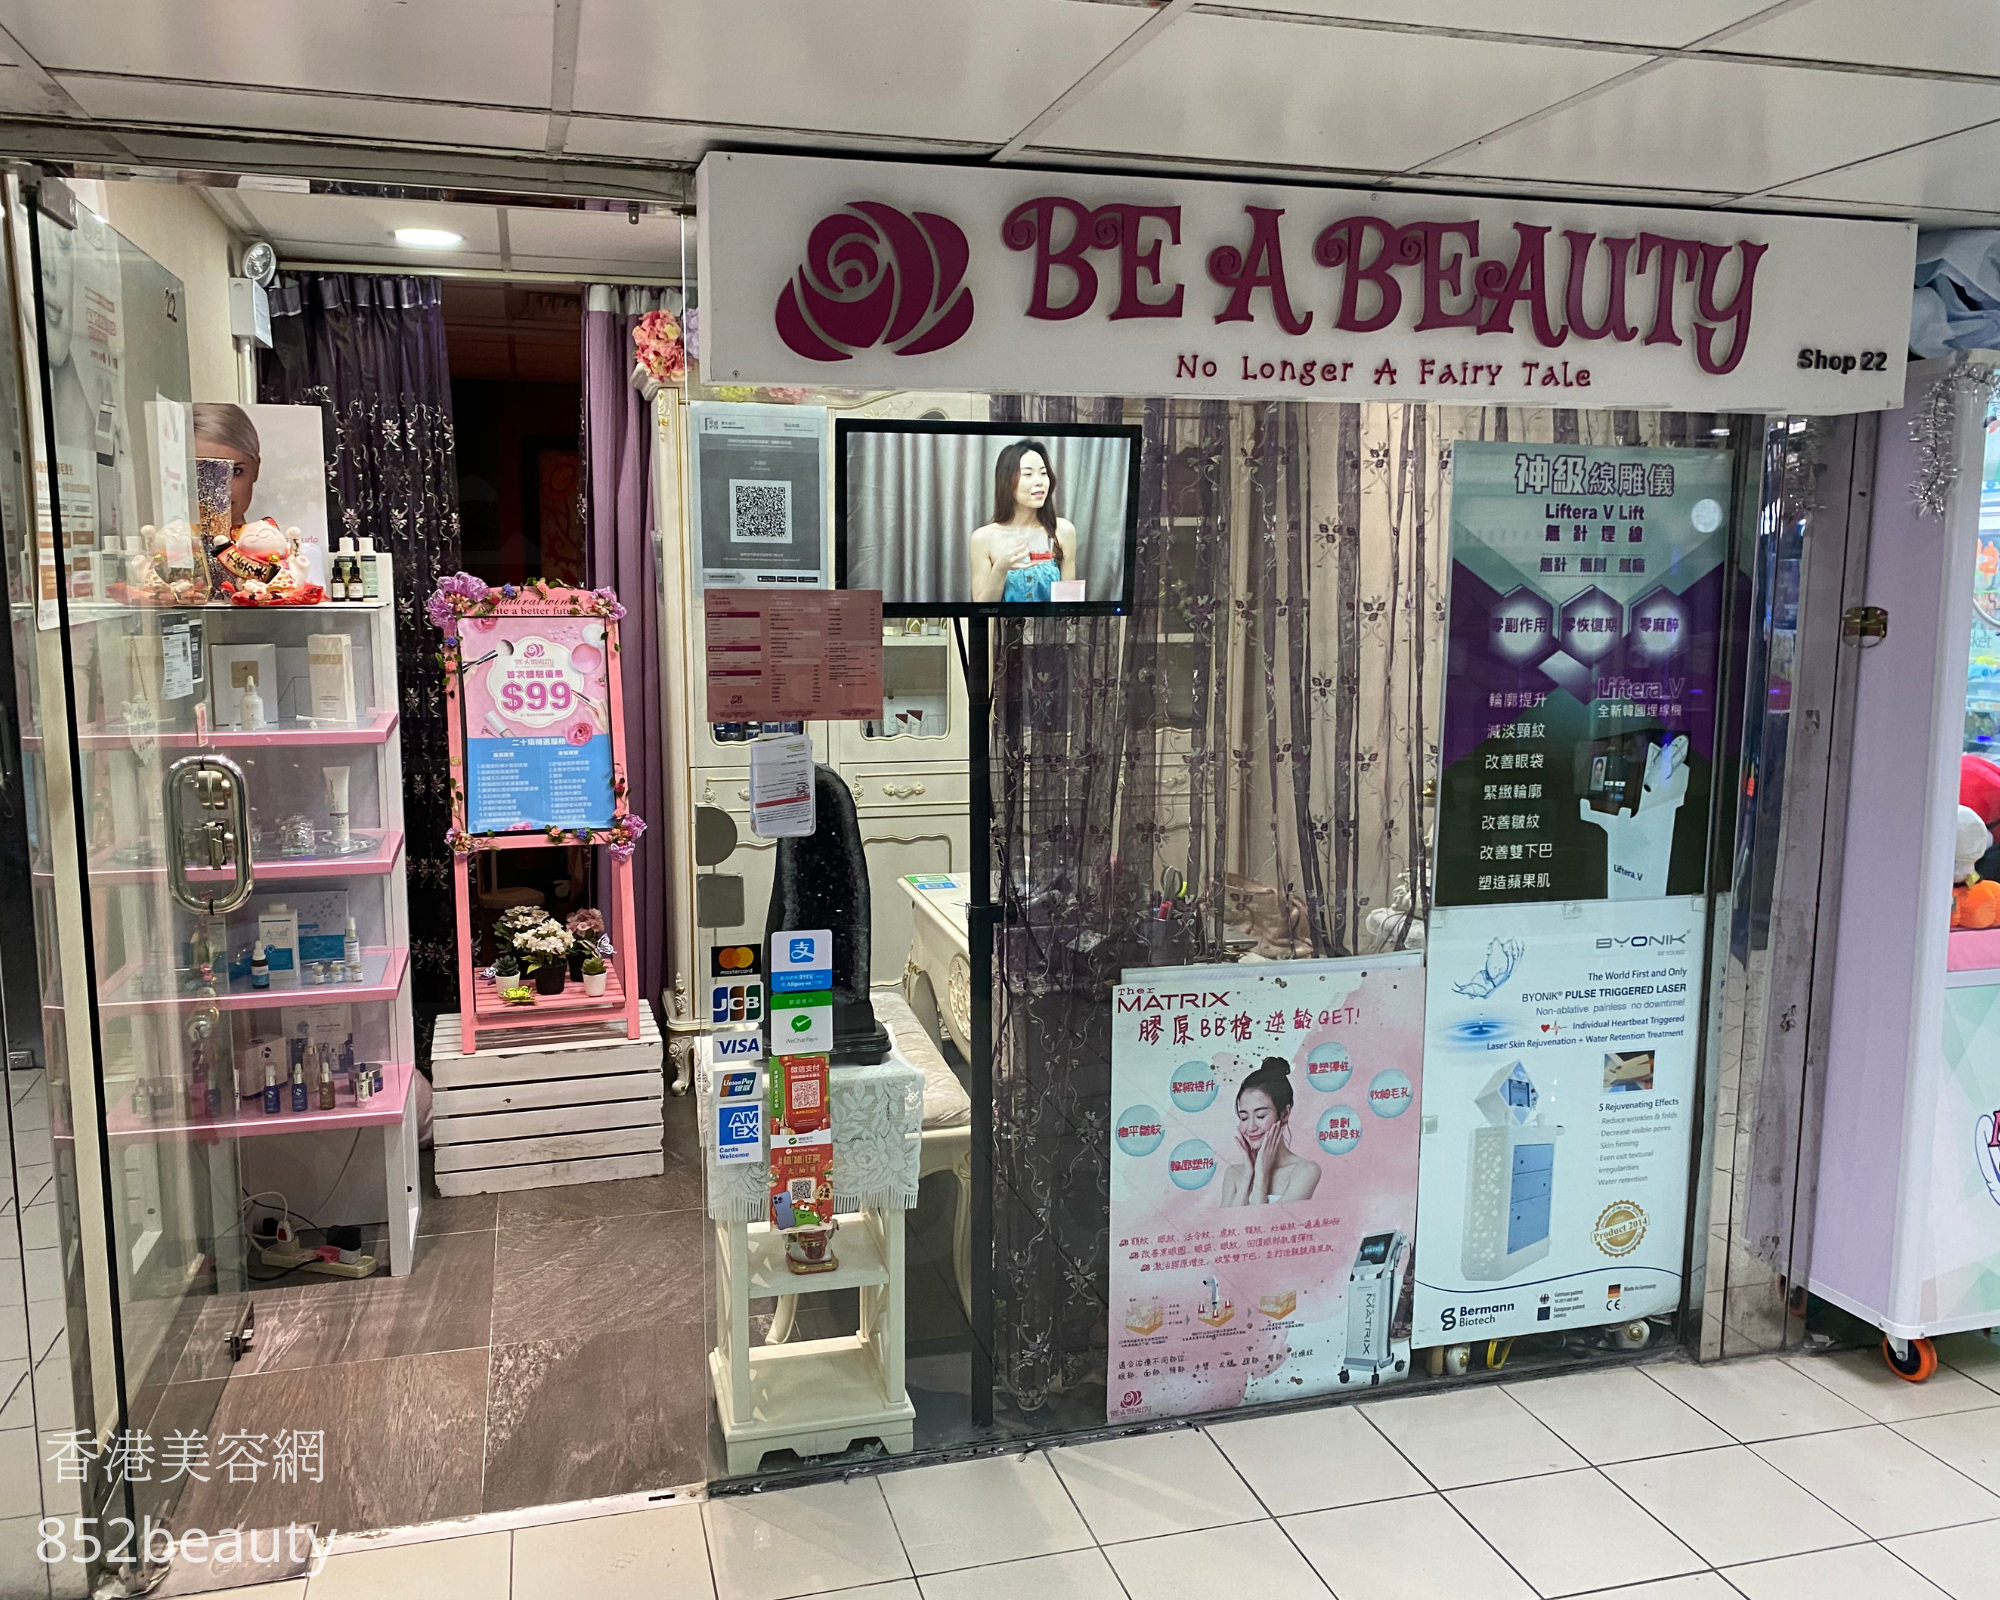 香港美容網 Hong Kong Beauty Salon 美容院 / 美容師: Be a beauty